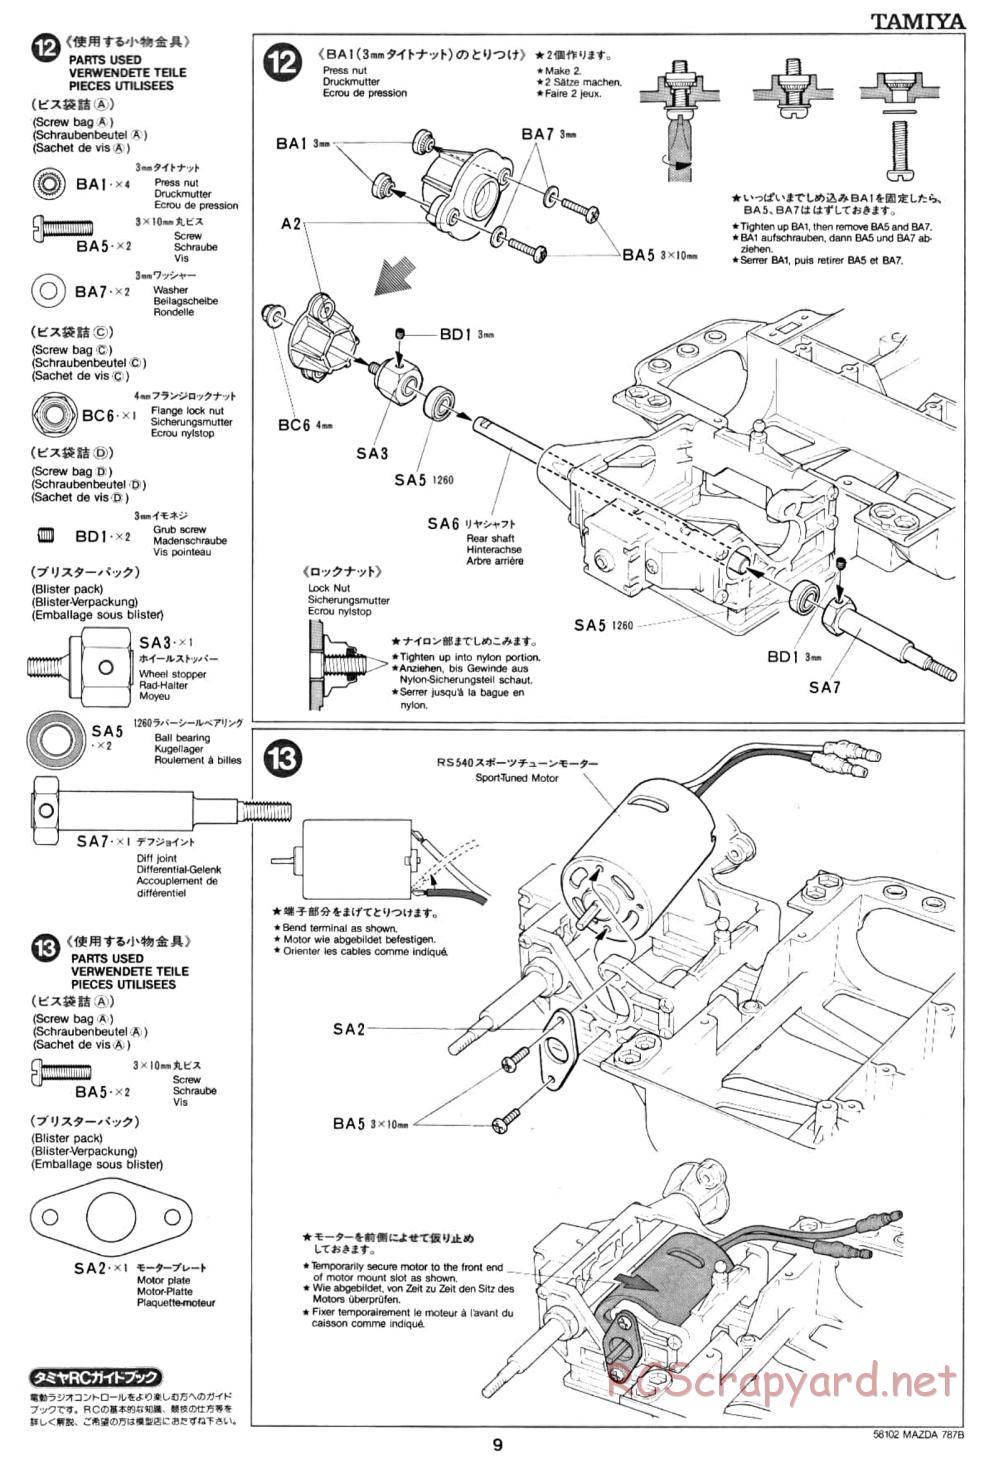 Tamiya - Mazda 787B - Group-C Chassis - Manual - Page 9